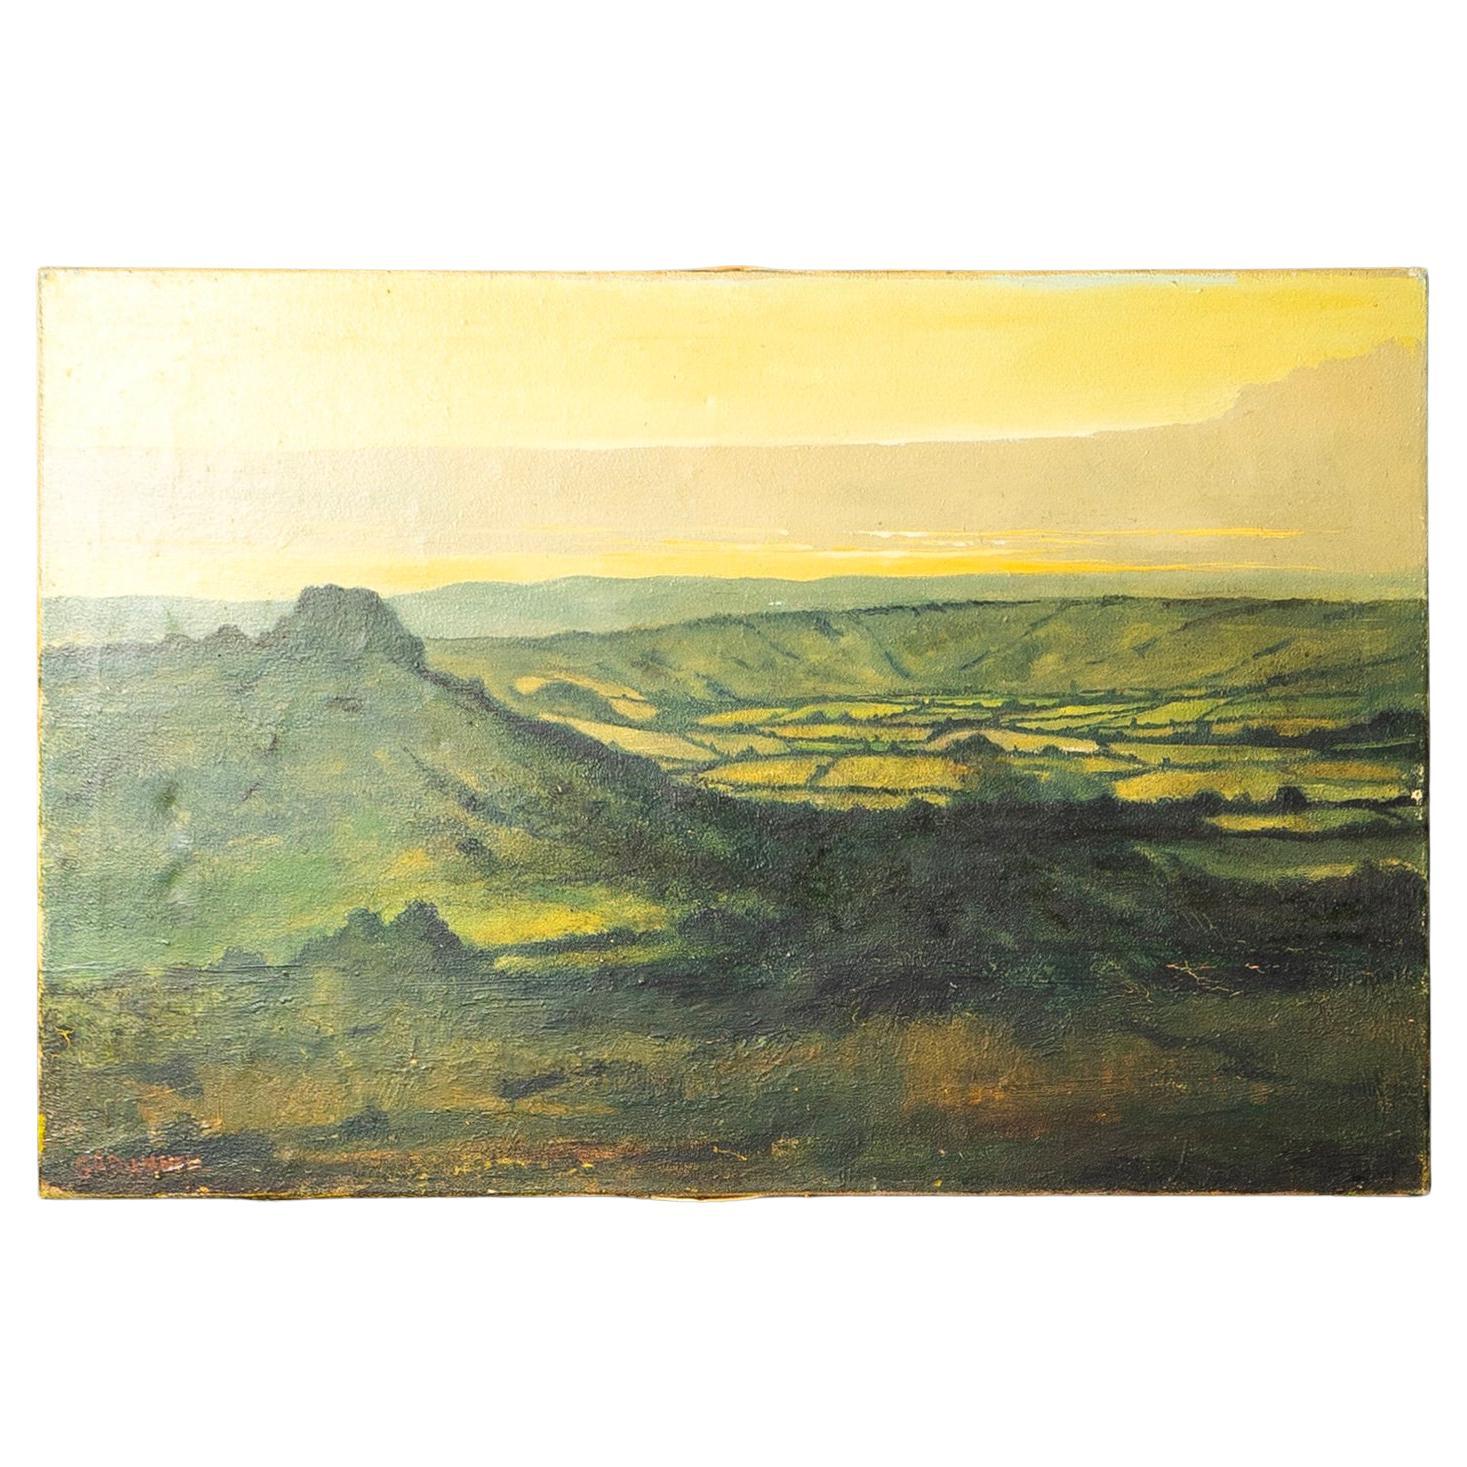 Large Rural Landscape, Antique Original Oil on Canvas Painting, 1900s